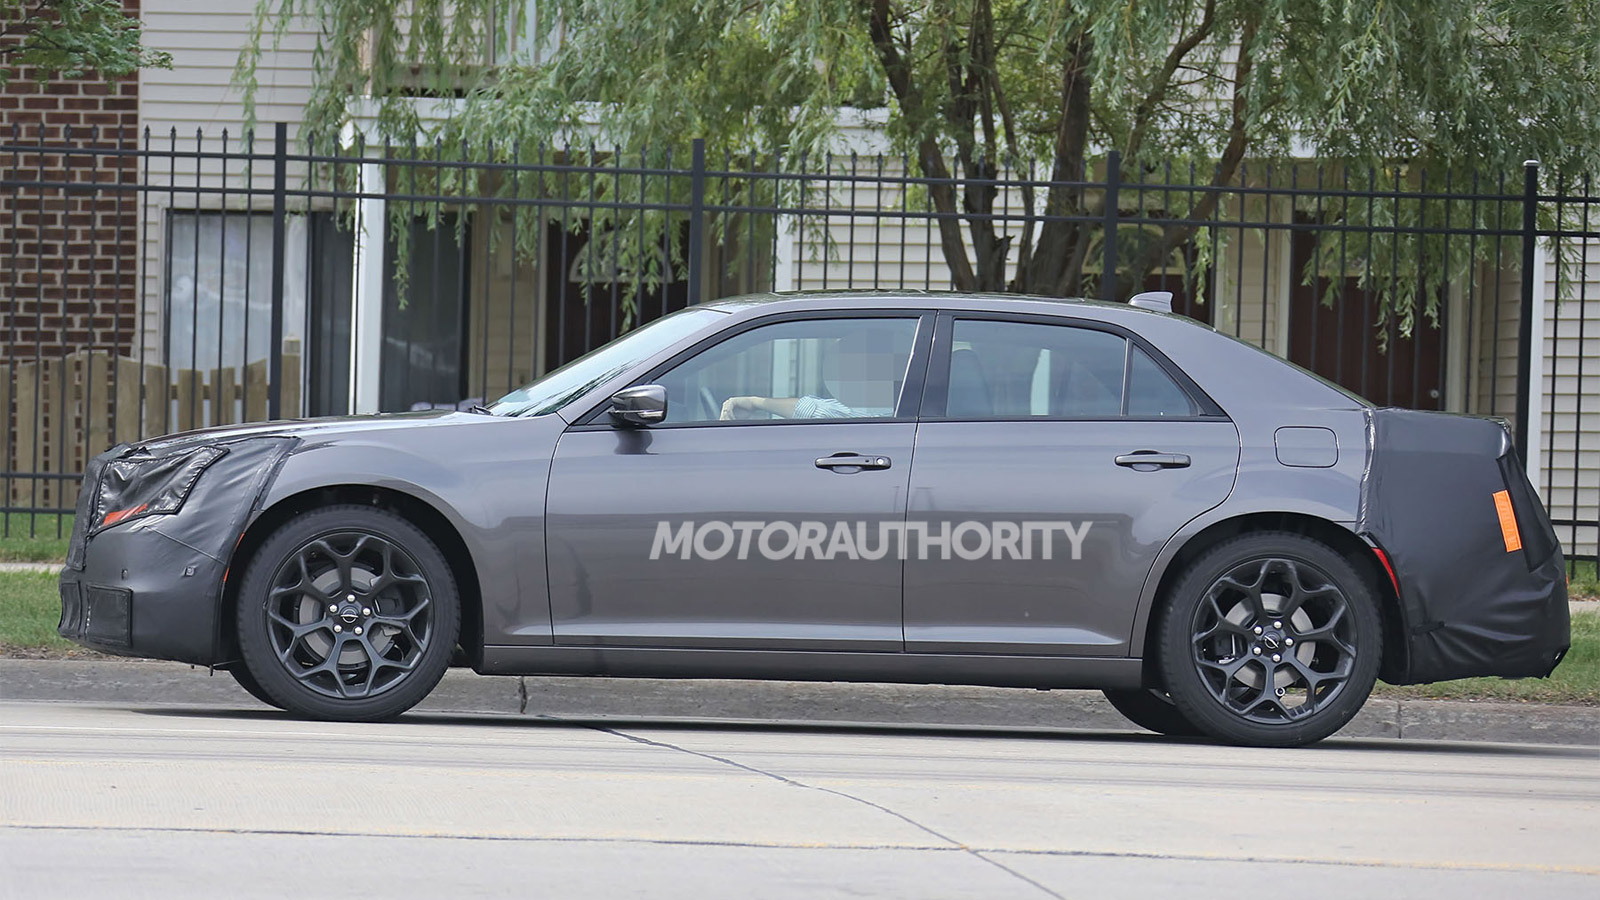 2015 Chrysler 300 facelift spy shots